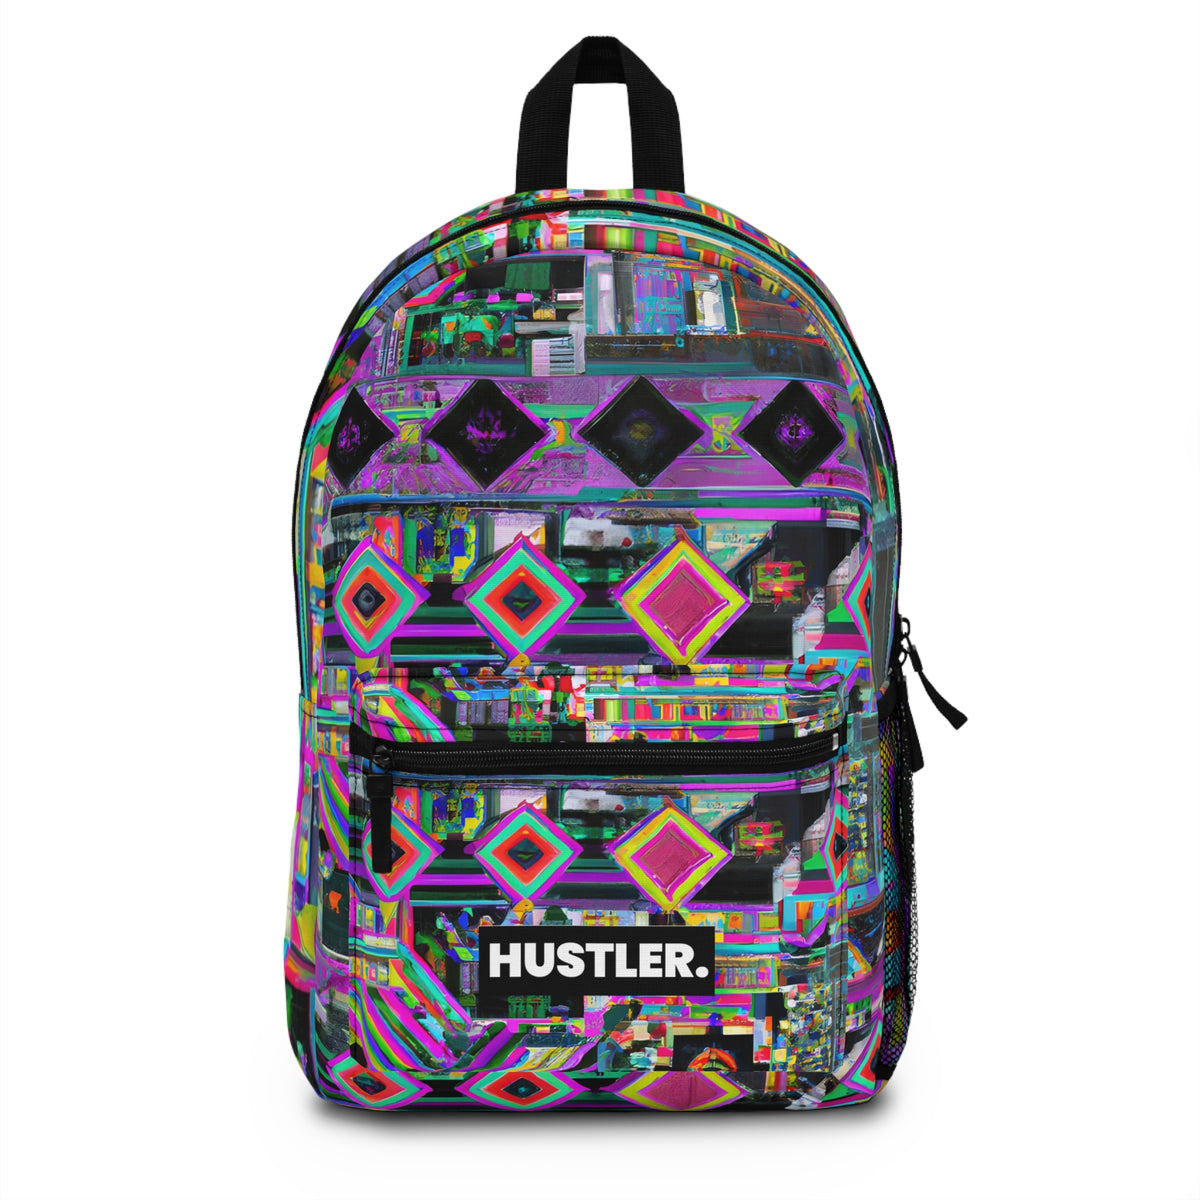 StarSensational - Hustler Backpack